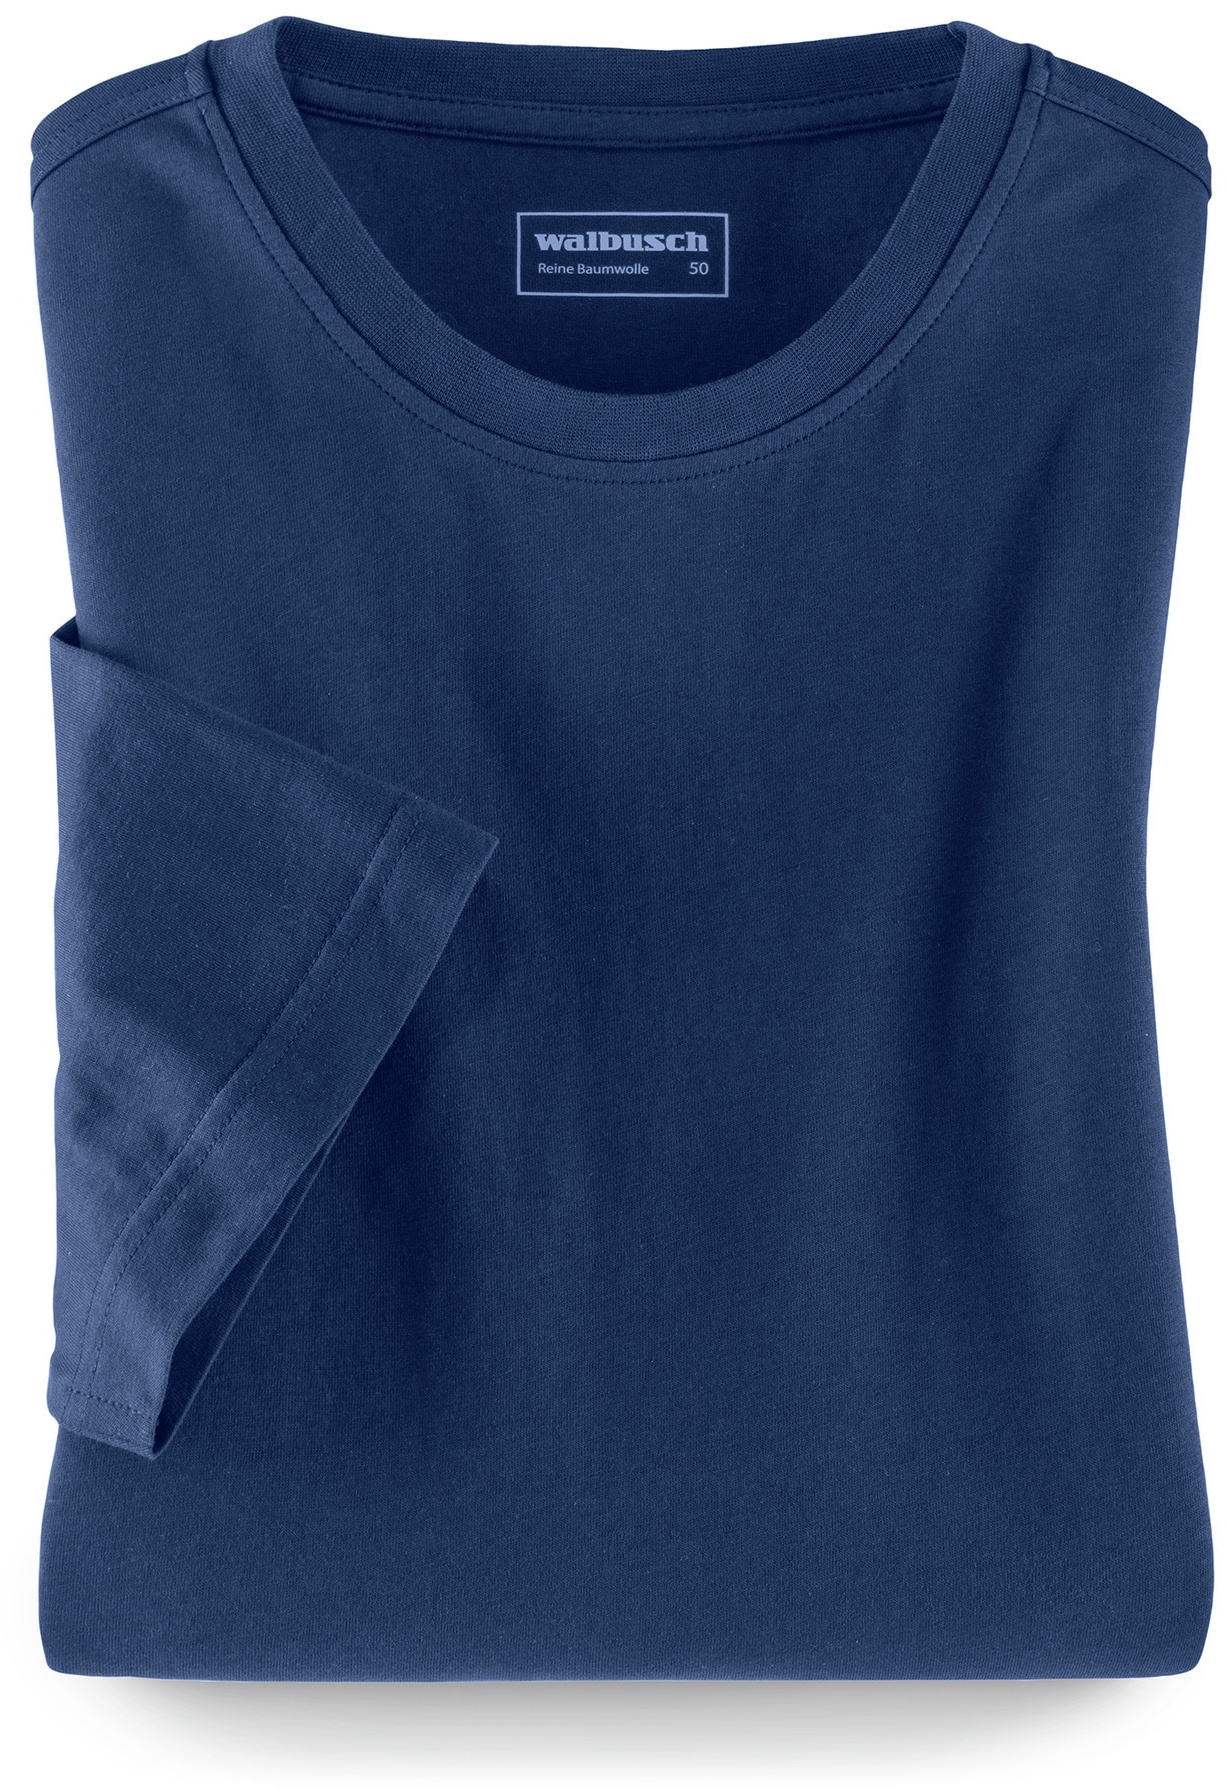 Walbusch Herren T Shirt Rundhalsausschnitt einfarbig Blau 52